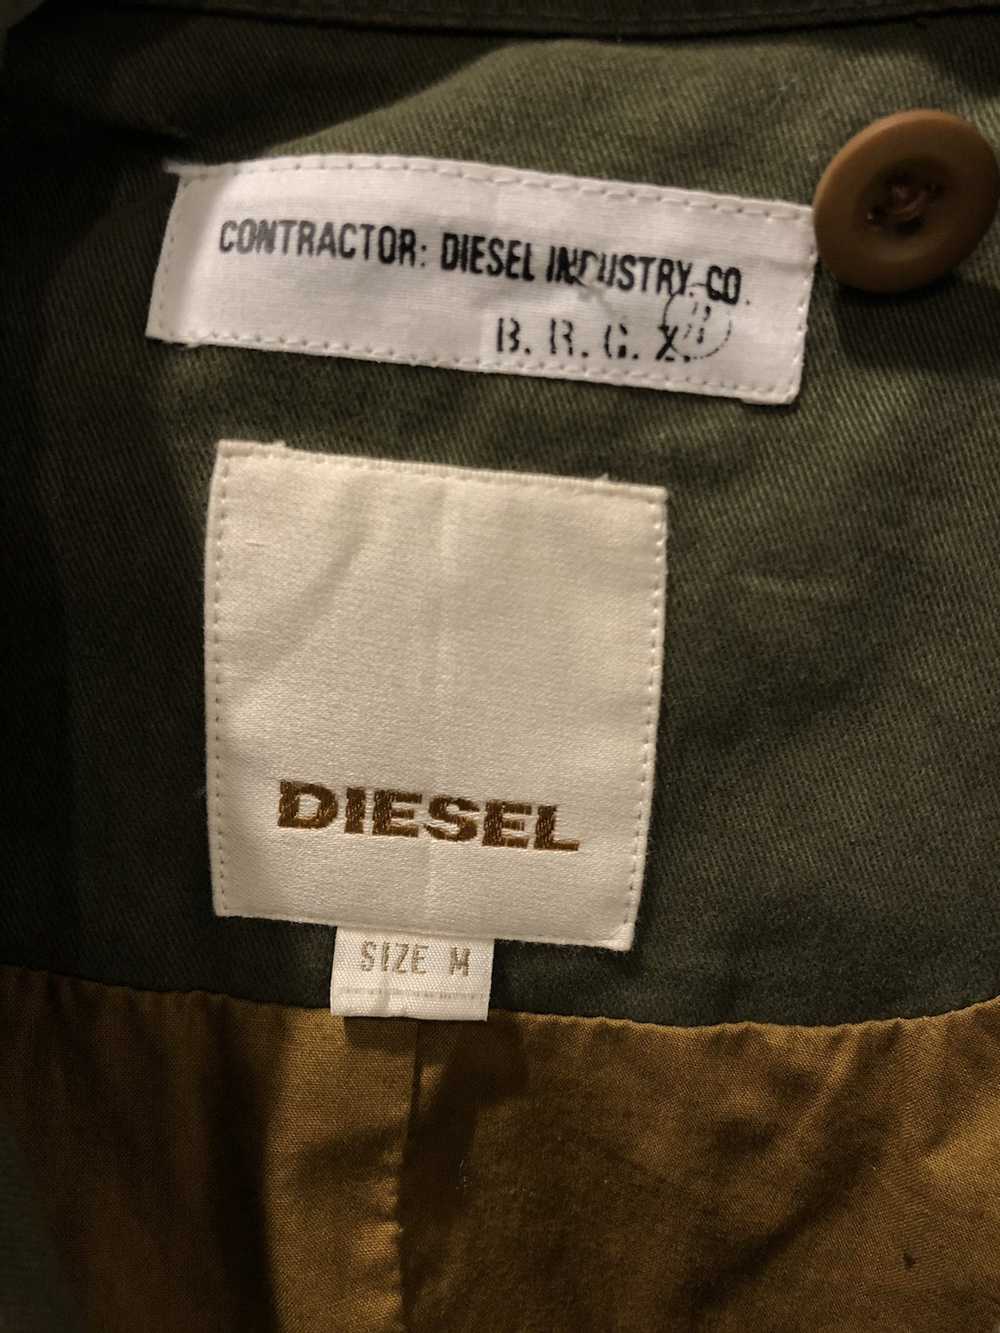 Diesel Diesel jackets Tyrese Gibson - image 7